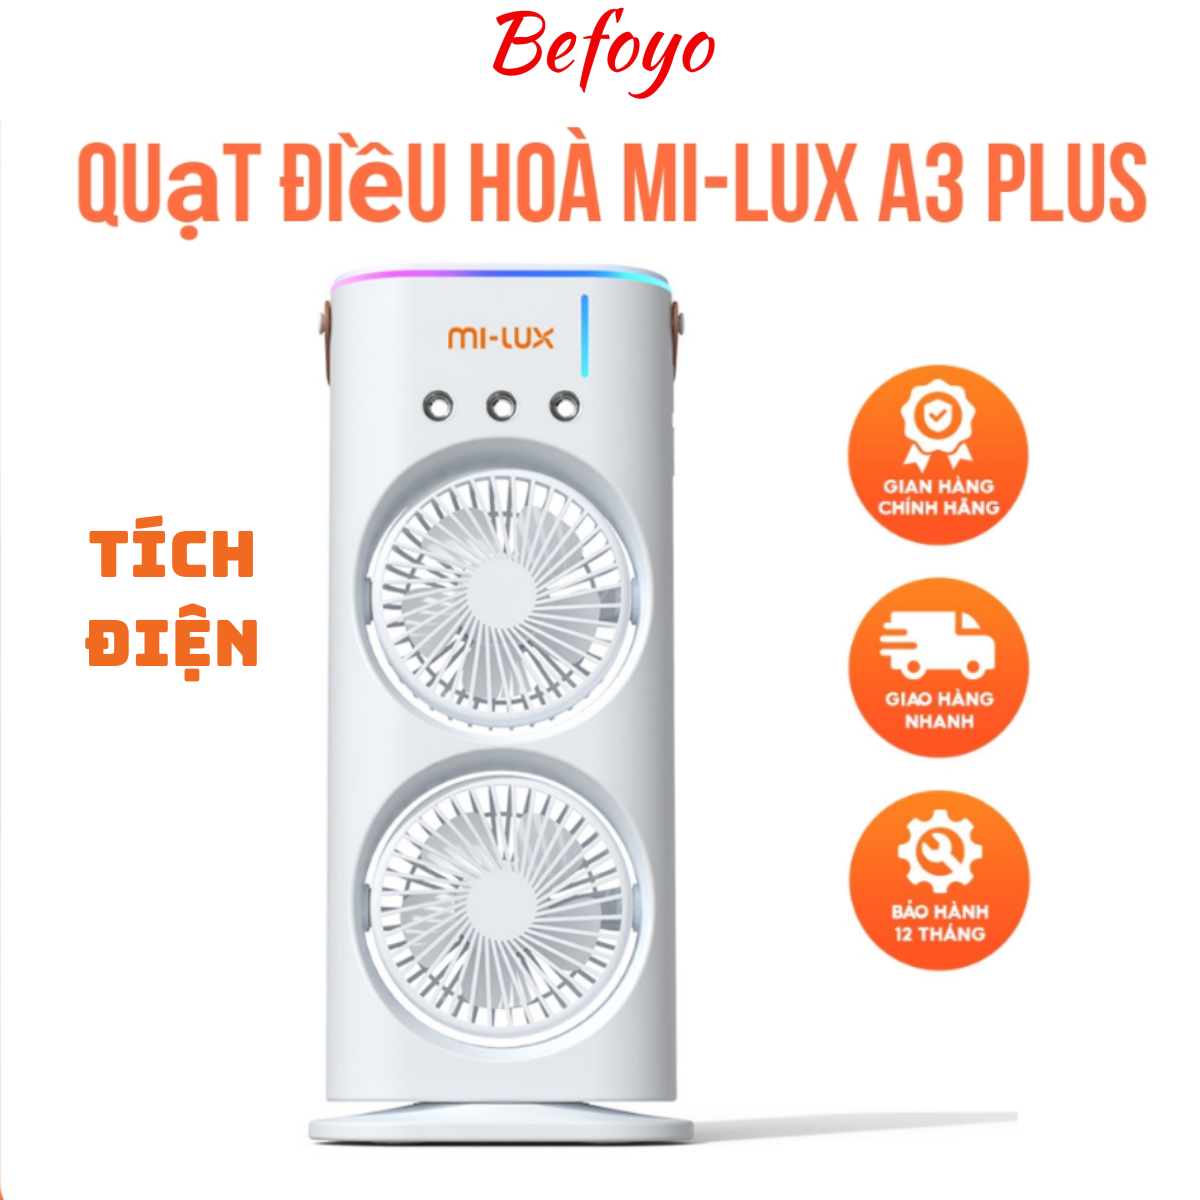 Quạt điều hòa tích điện Mi-Lux A3 Plus, 2 cánh gió, làm mát bằng hơi nước, phun sương, đèn Led, BH 12 tháng – Befoyo